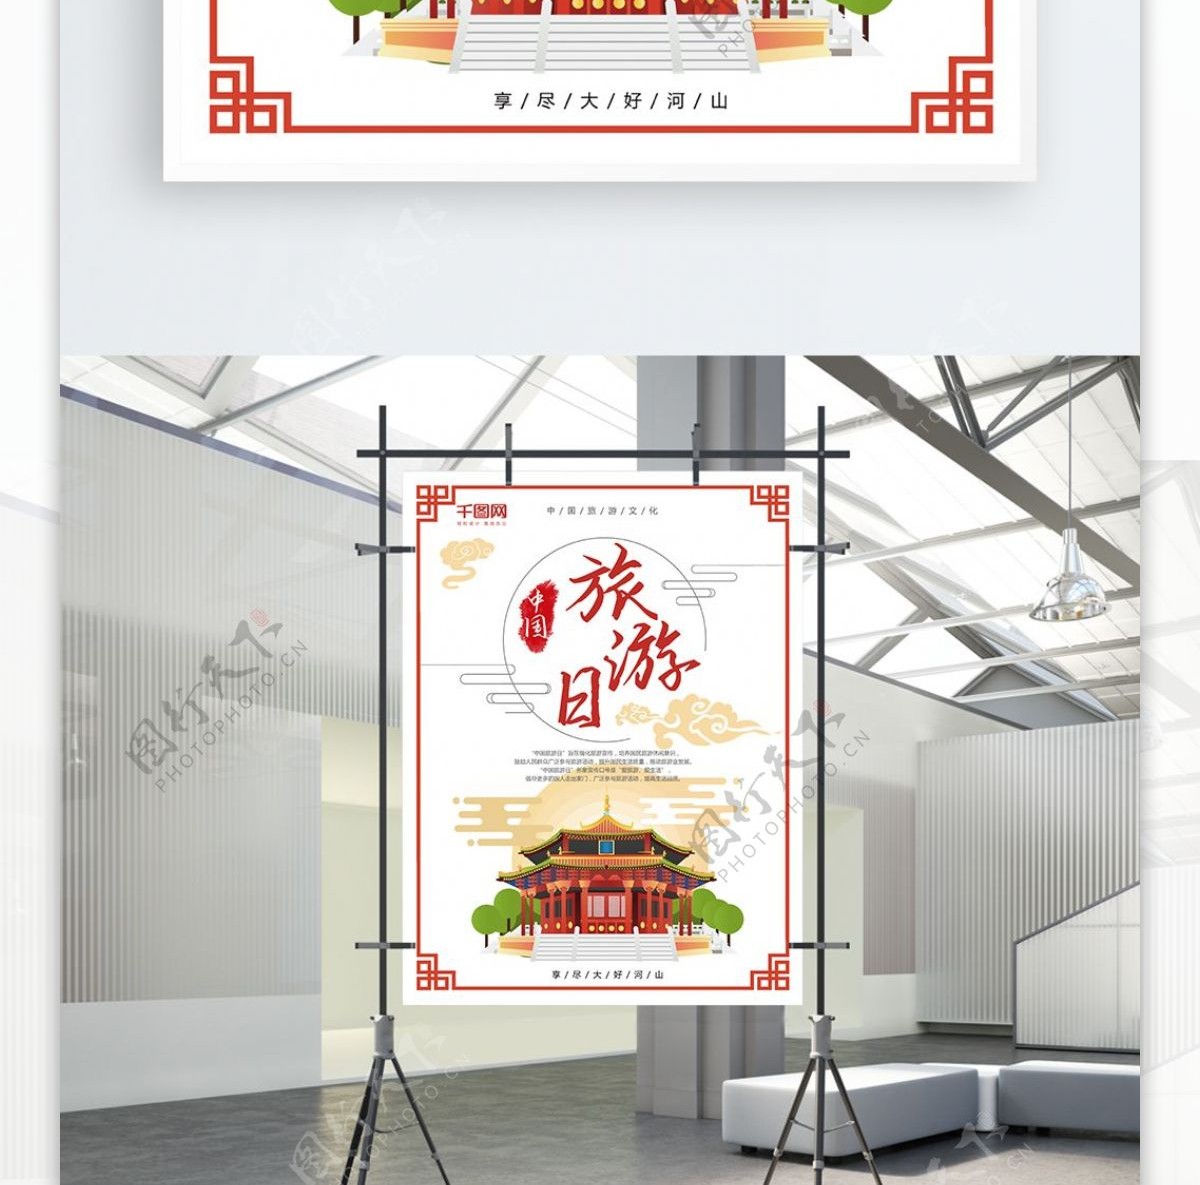 中国旅游日PSD海报